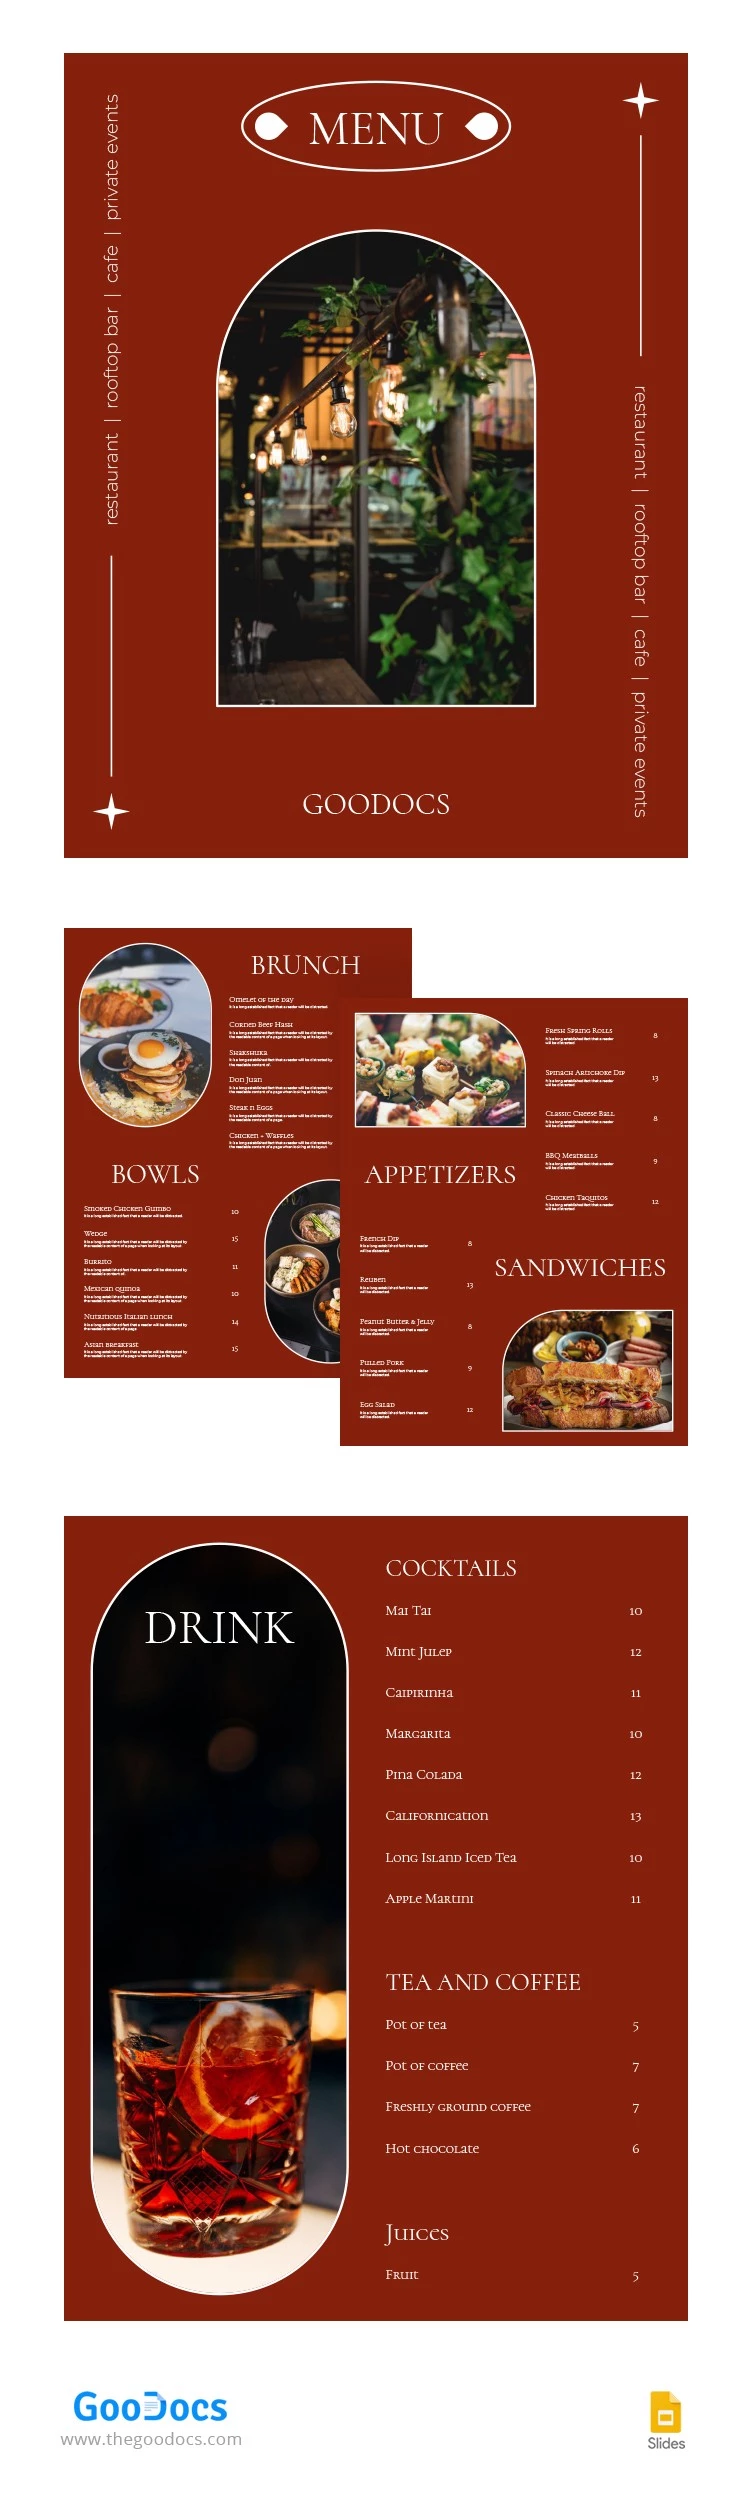 Carte du restaurant moderne rouge - free Google Docs Template - 10063745